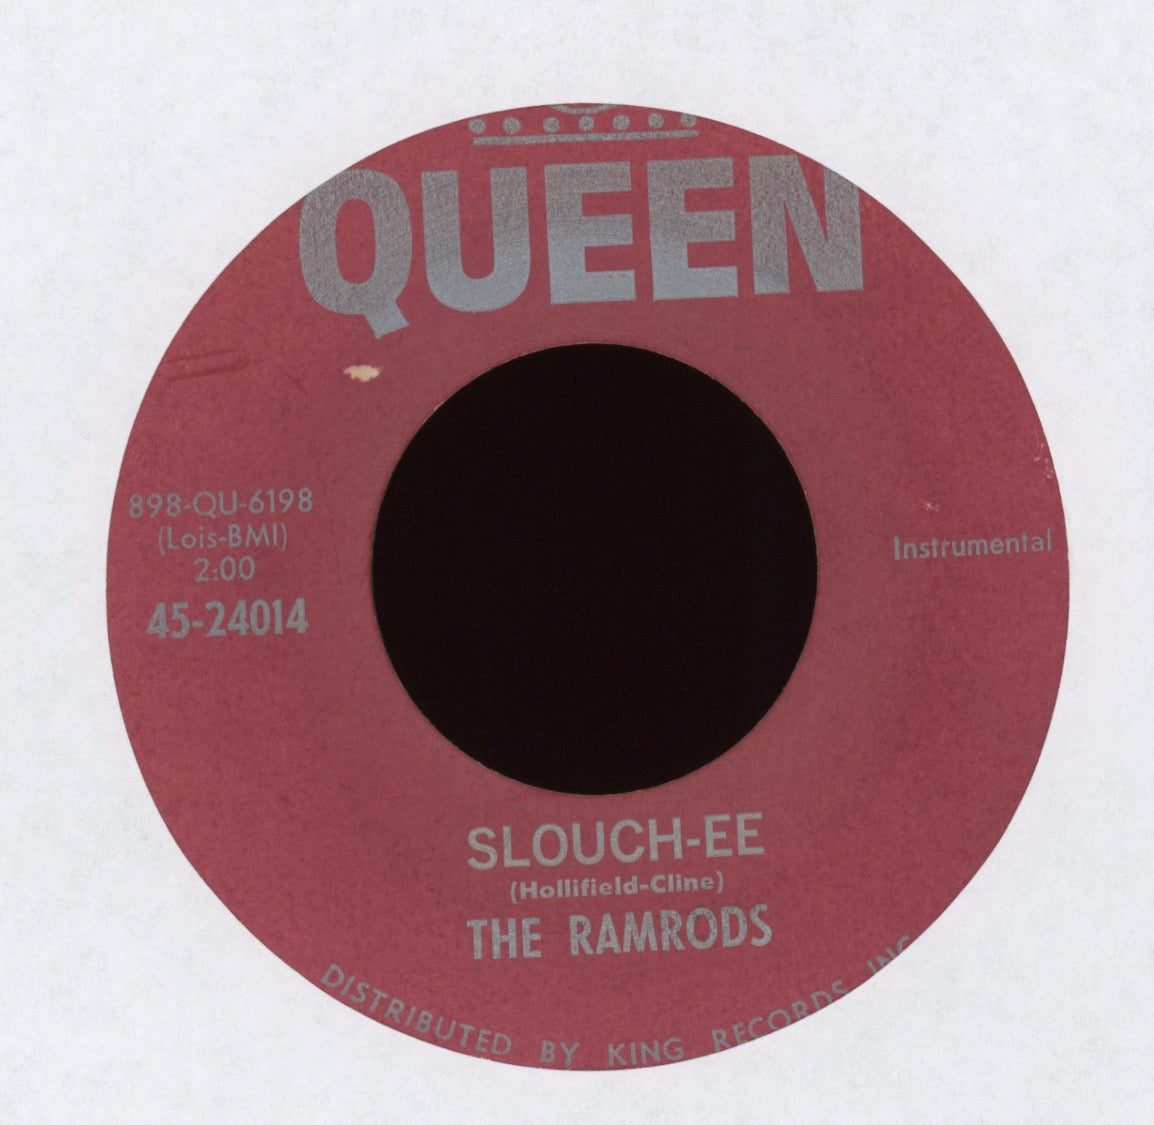 The Ramrods - Slee-Zee / Slouch-Ee on Queen